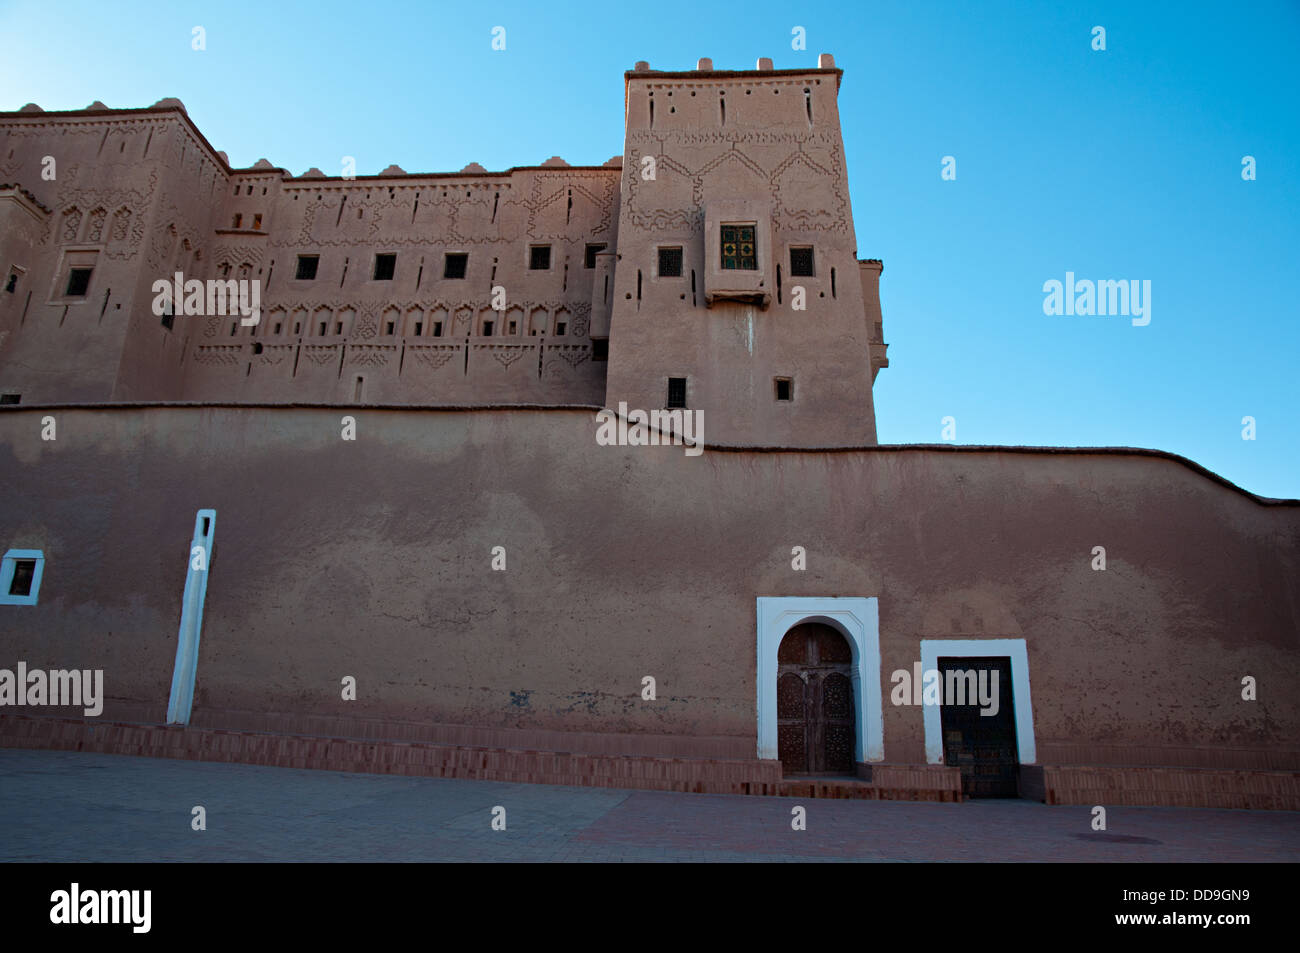 Kasbah de Taourirt, Ouarzazate, Maroc Banque D'Images